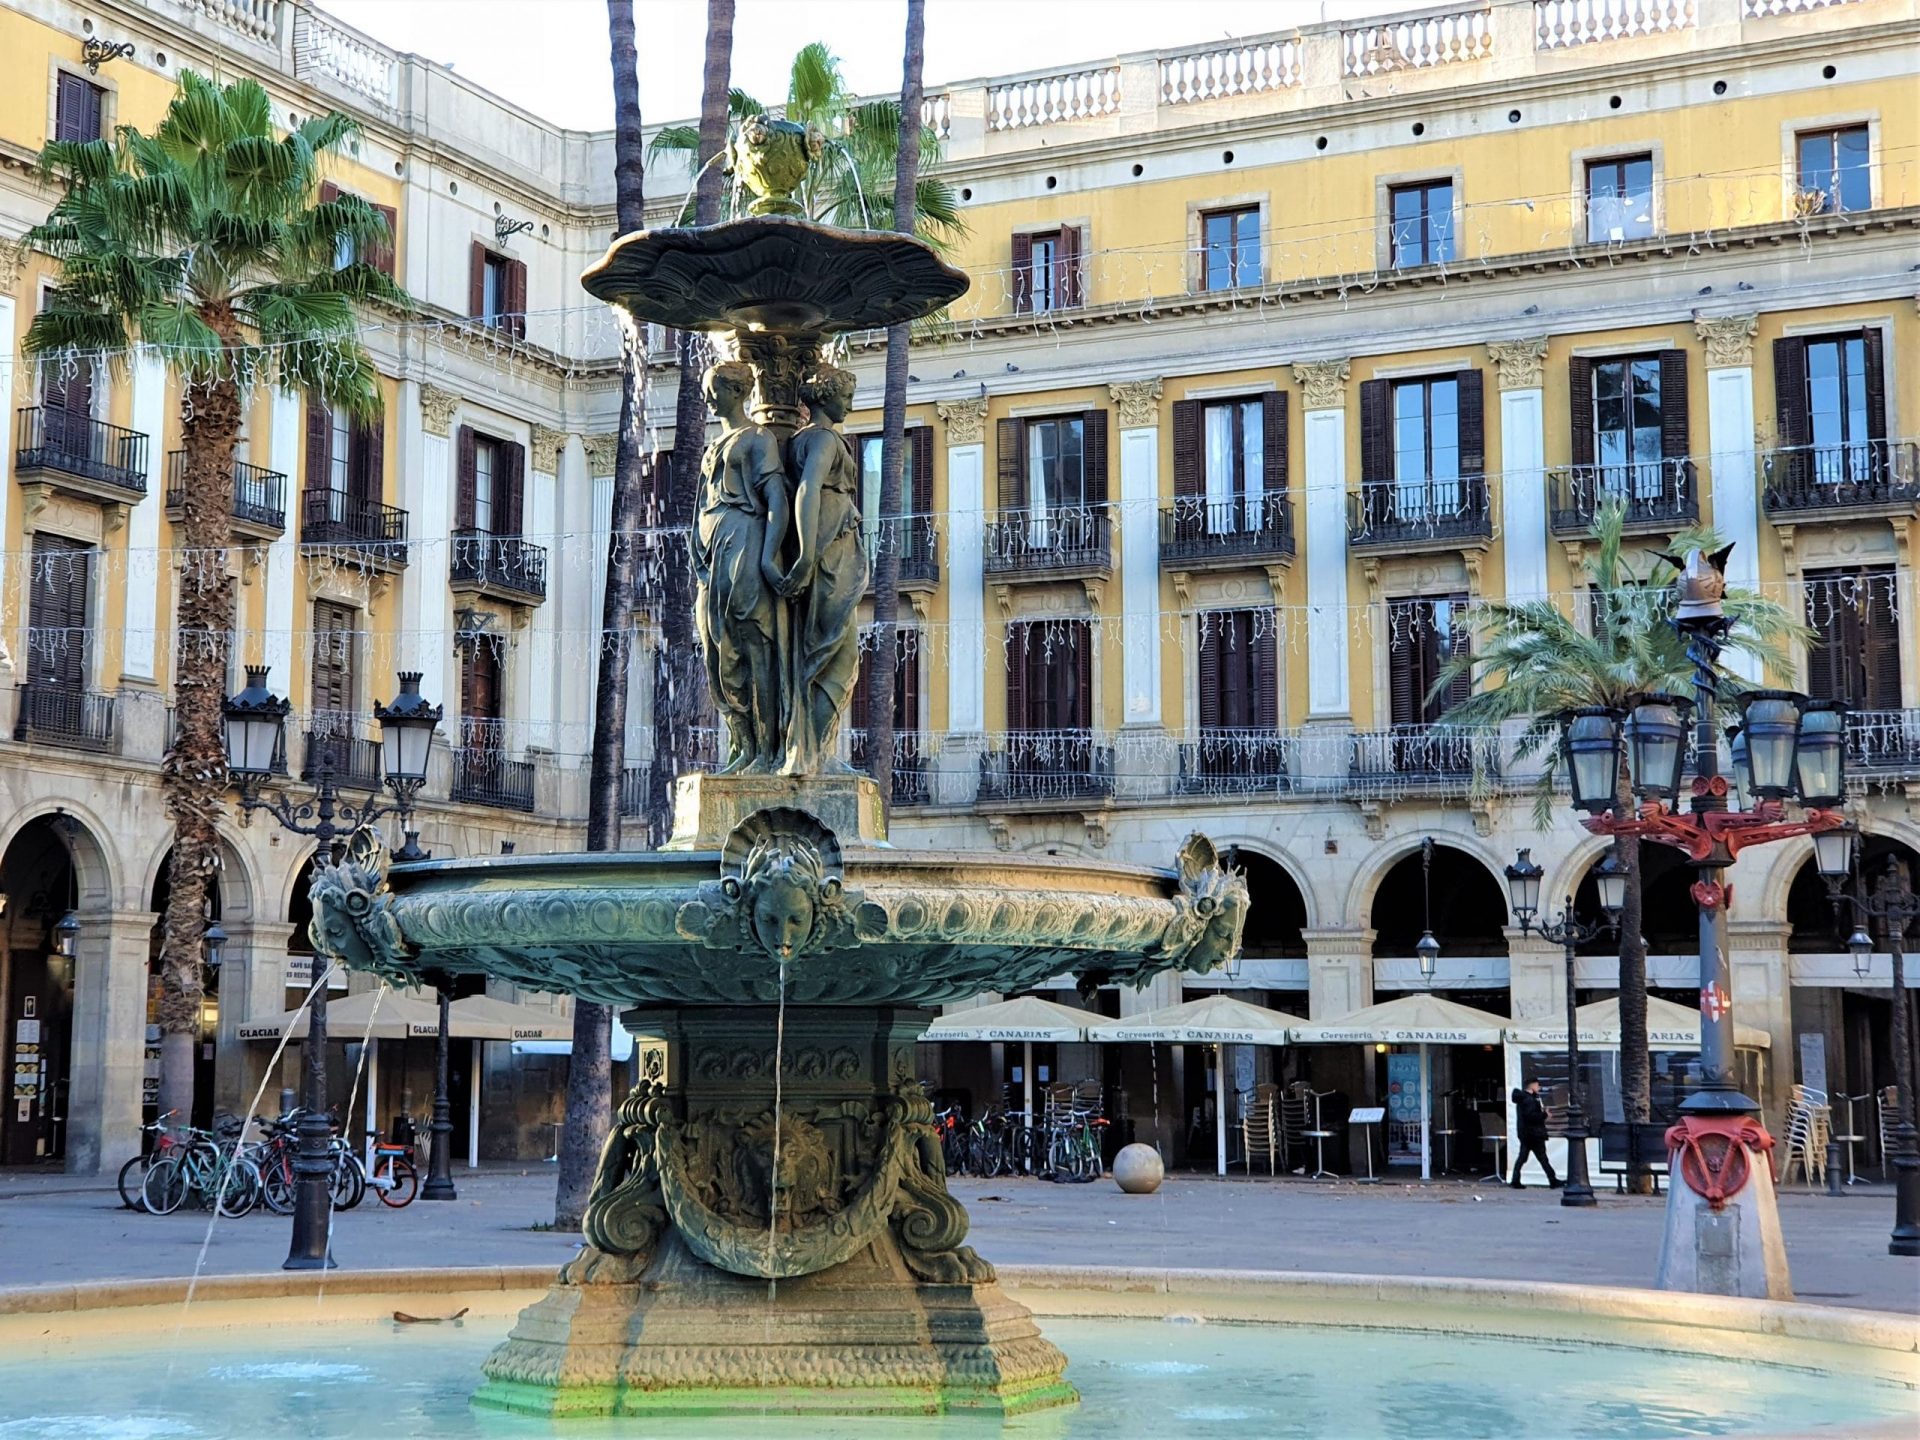 La fontana e i lampioni di Plaça Reial, il Quartiere Gotico, Barcellona 2021